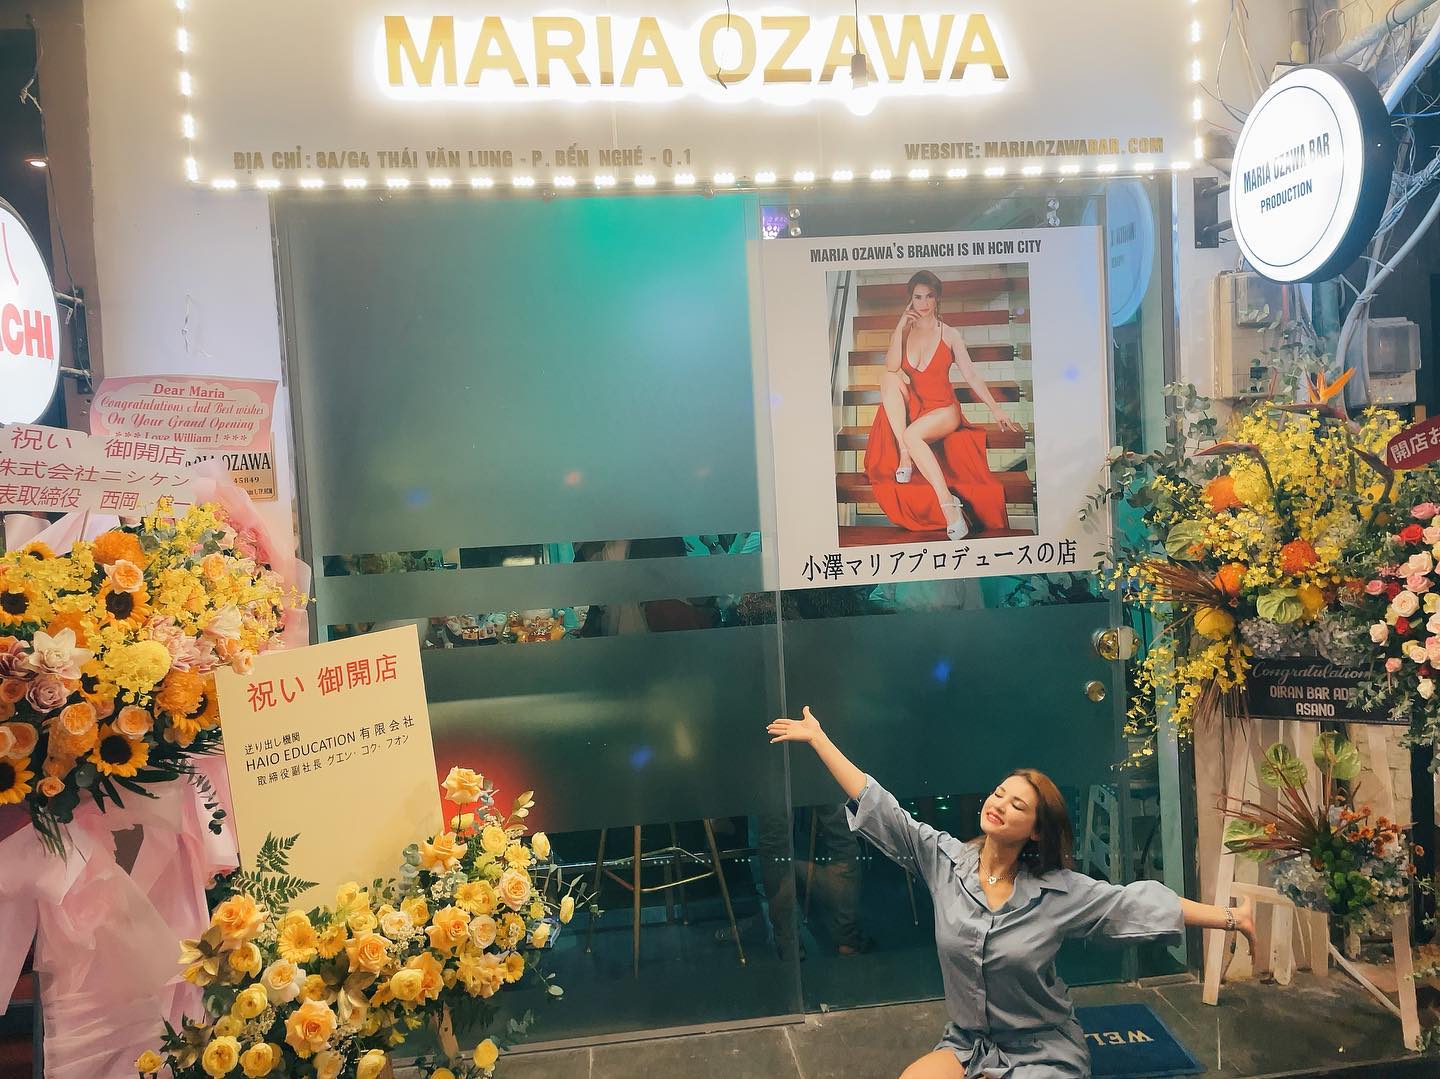 Nữ diễn viên Nhật Bản Maria Ozawa bất ngờ về Việt Nam mở quán bar, bỏ lại hào quang ở Nhật? - ảnh 3